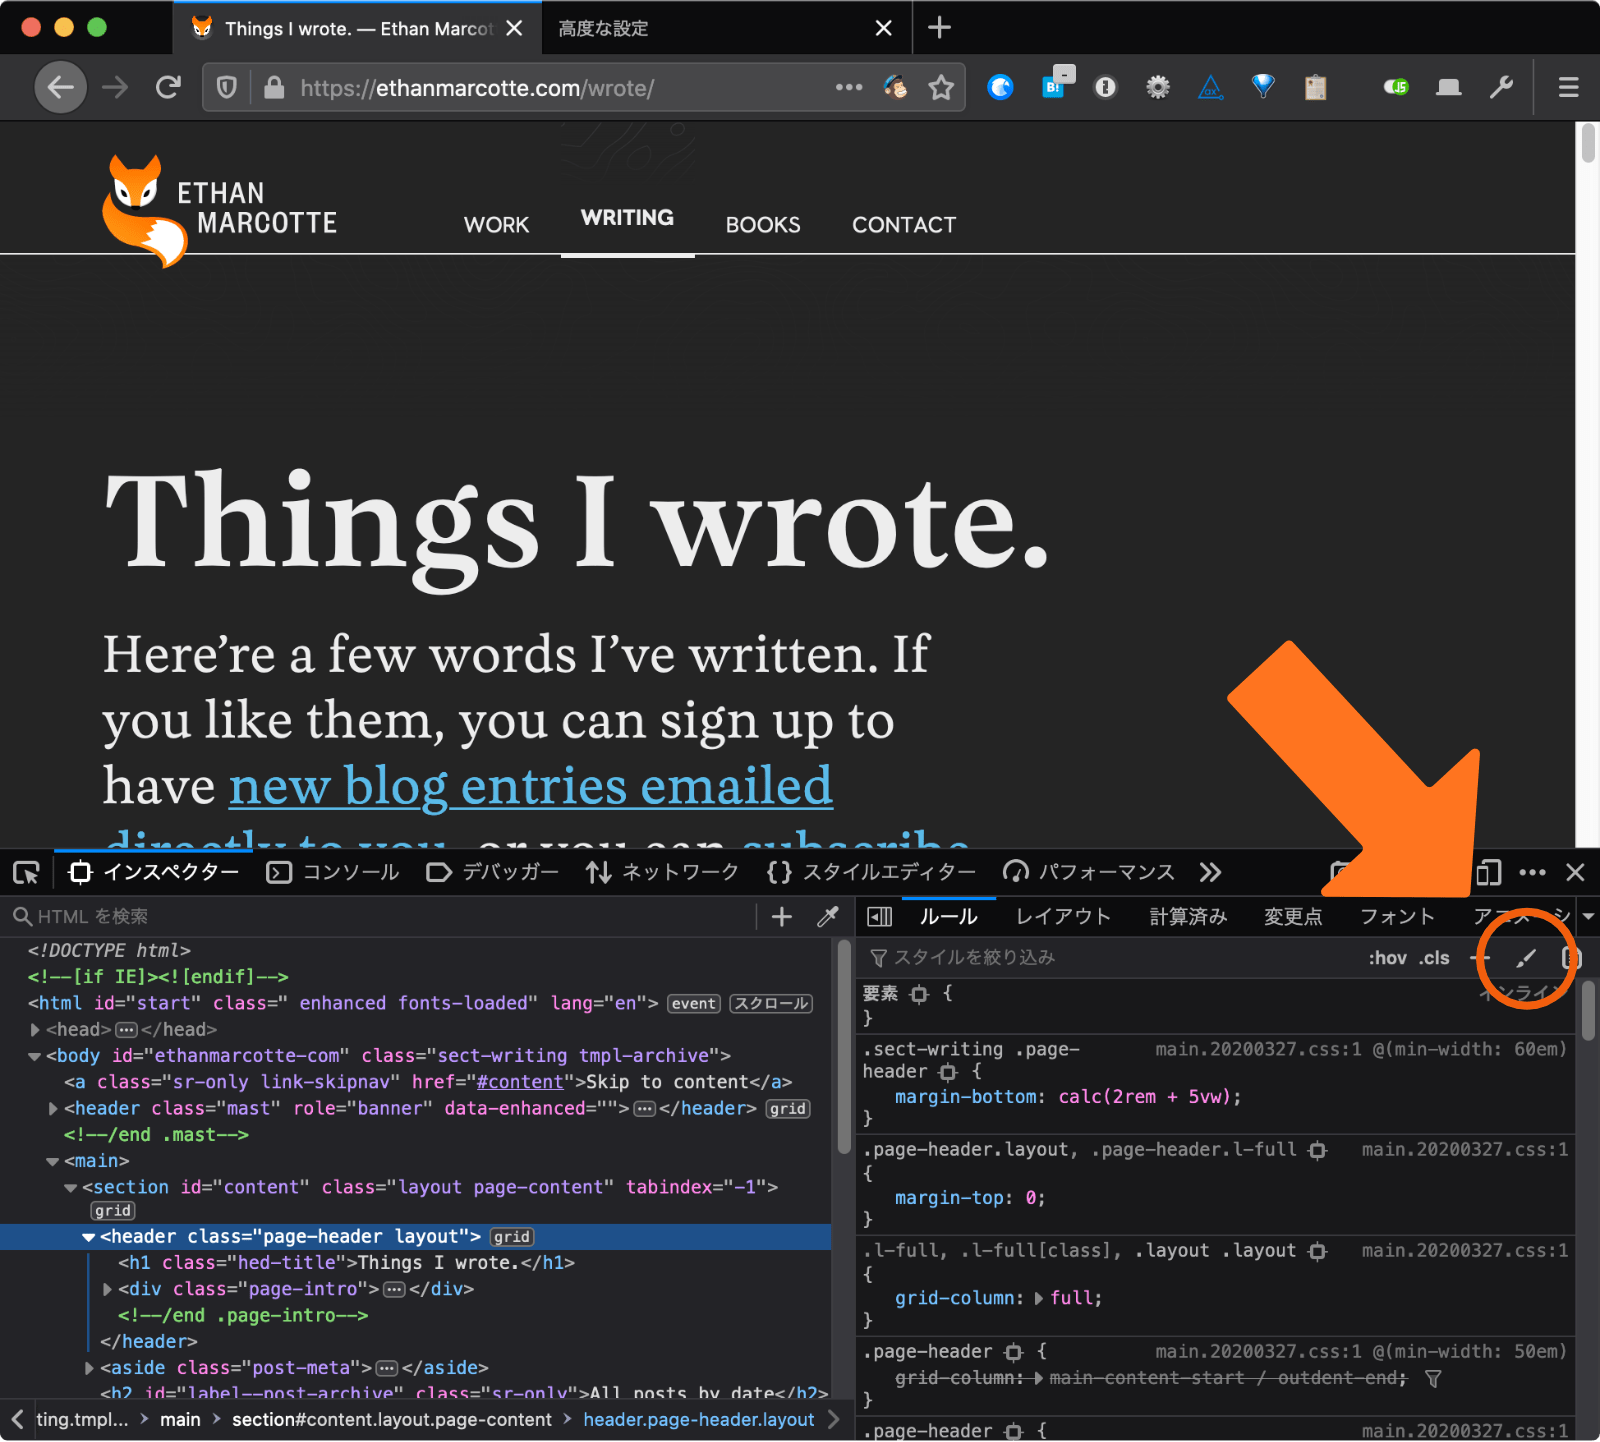 Firefoxの開発ツールでEthan Marcotteさんのウェブサイトのprefers-color-schemeの設定を確認している画面。開発ツールのルールビューのブラシアイコンがオレンジ色の丸で囲われている